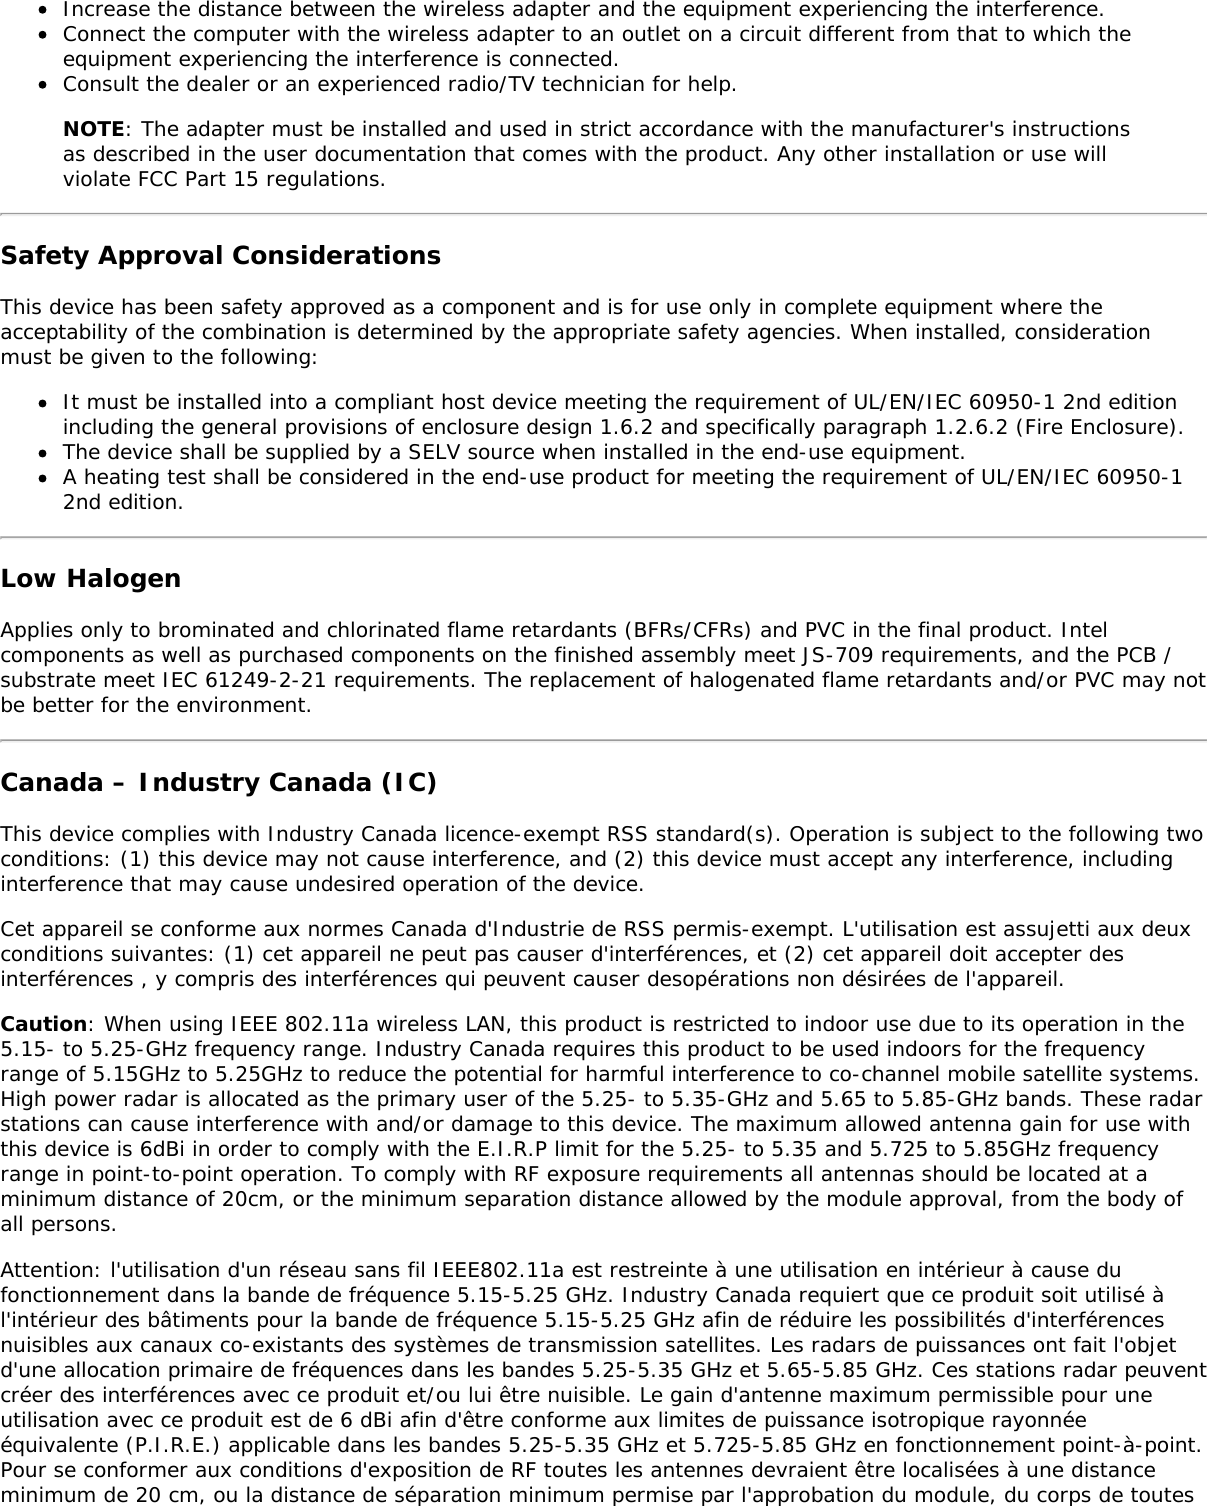 Page 16 of Hewlett Packard Enterprise EL3009260 Wifi/BT Module User Manual Intel     WiFi Adapter Information Guide